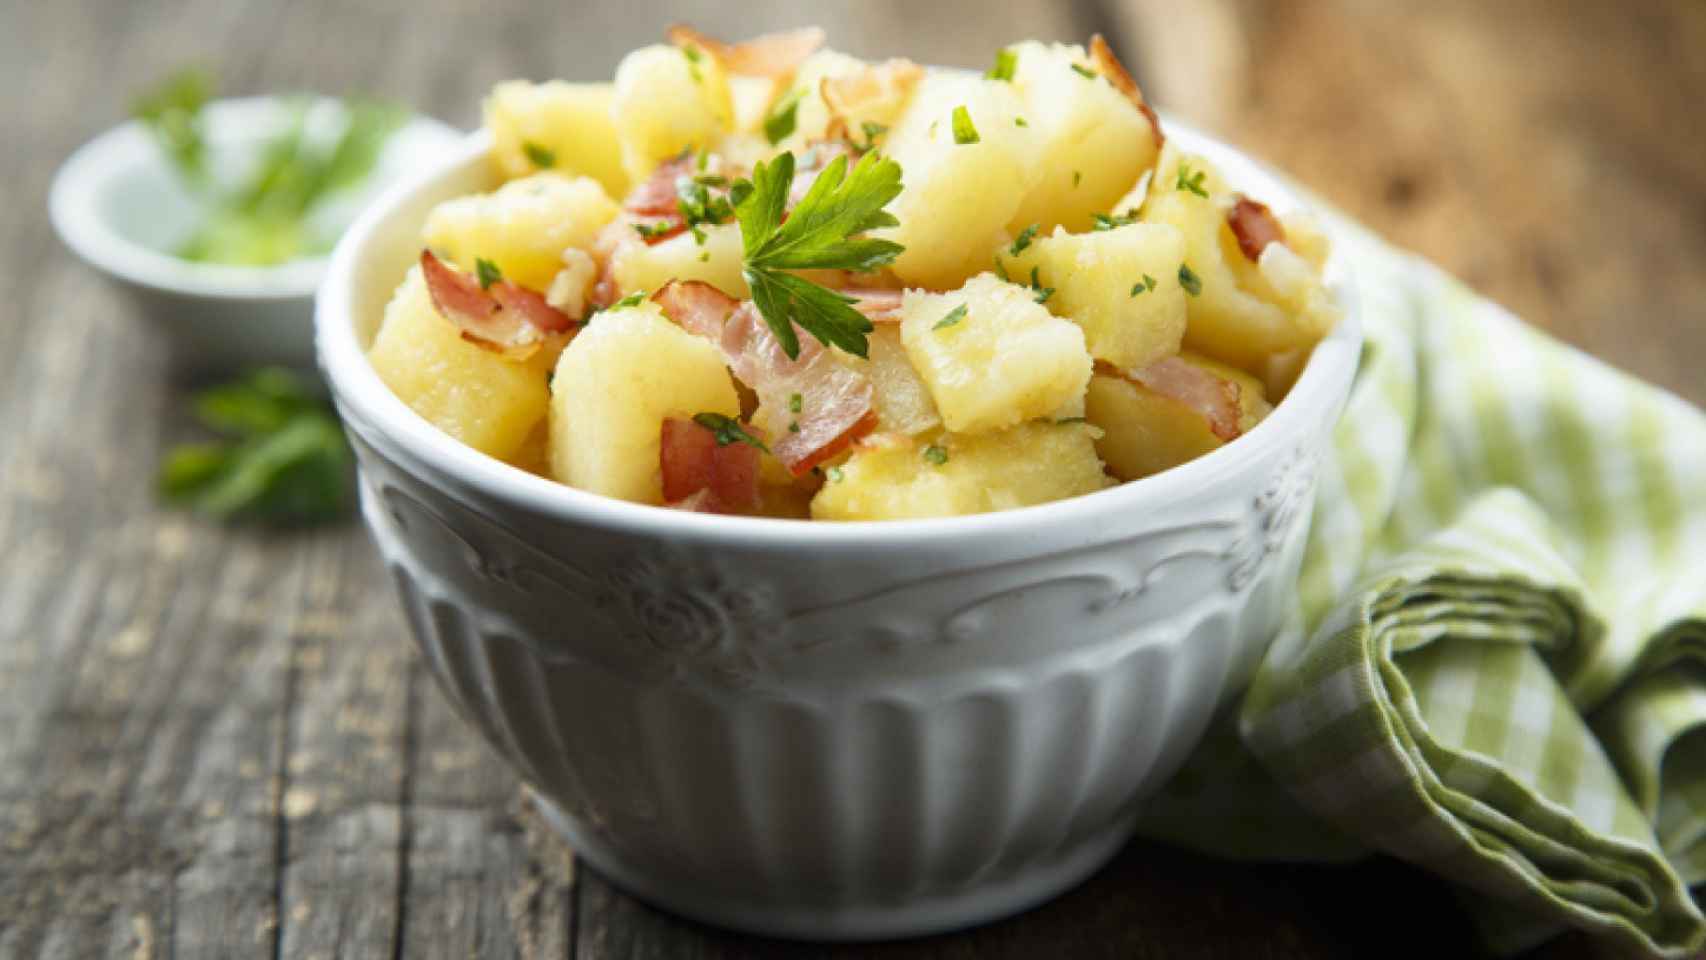 Una ensalada campera, cuyo ingrediente principal son las patatas cocidas.